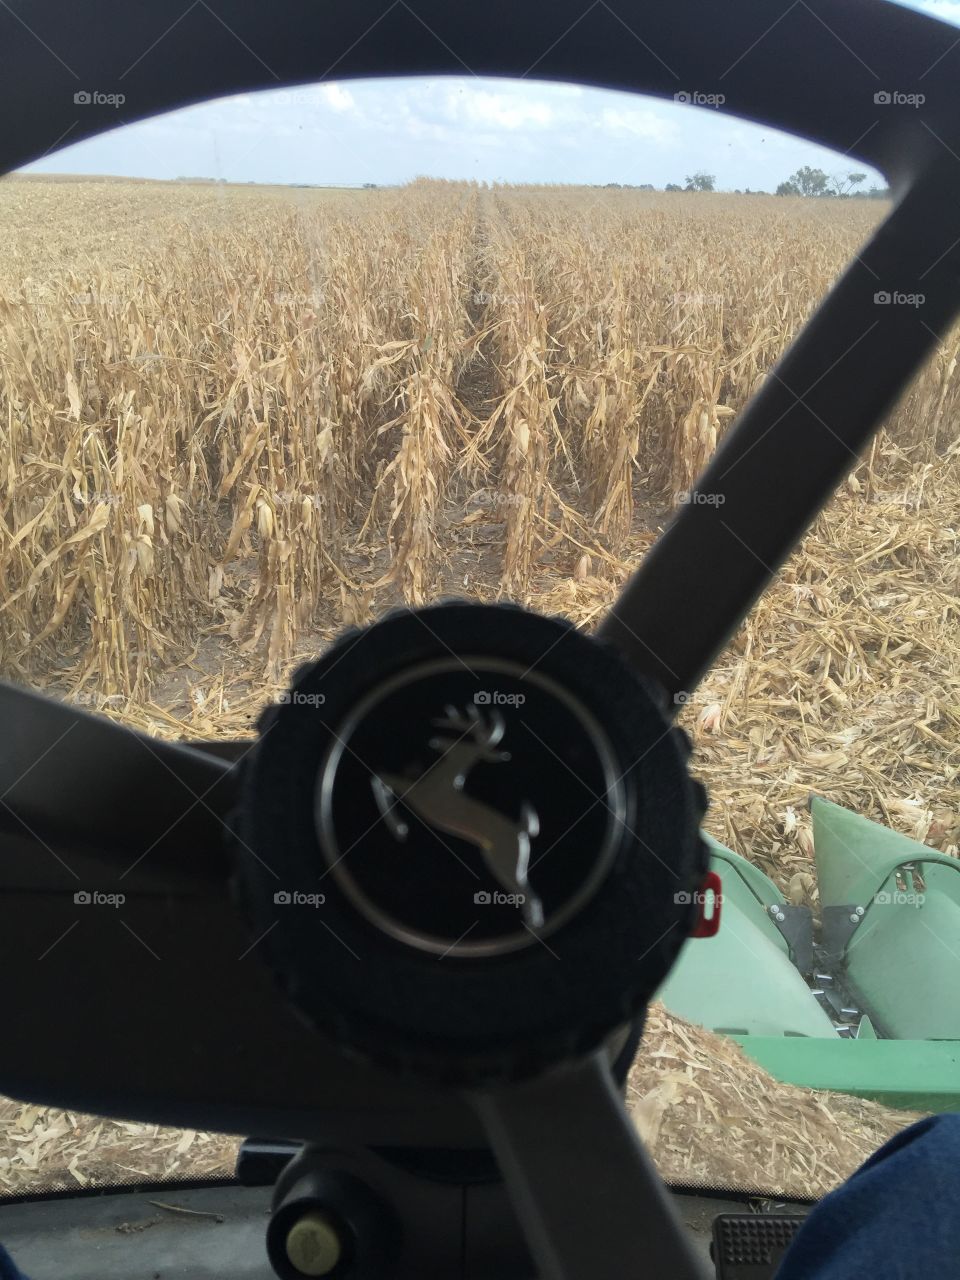 Corn harvest 2015. Pickin our crop